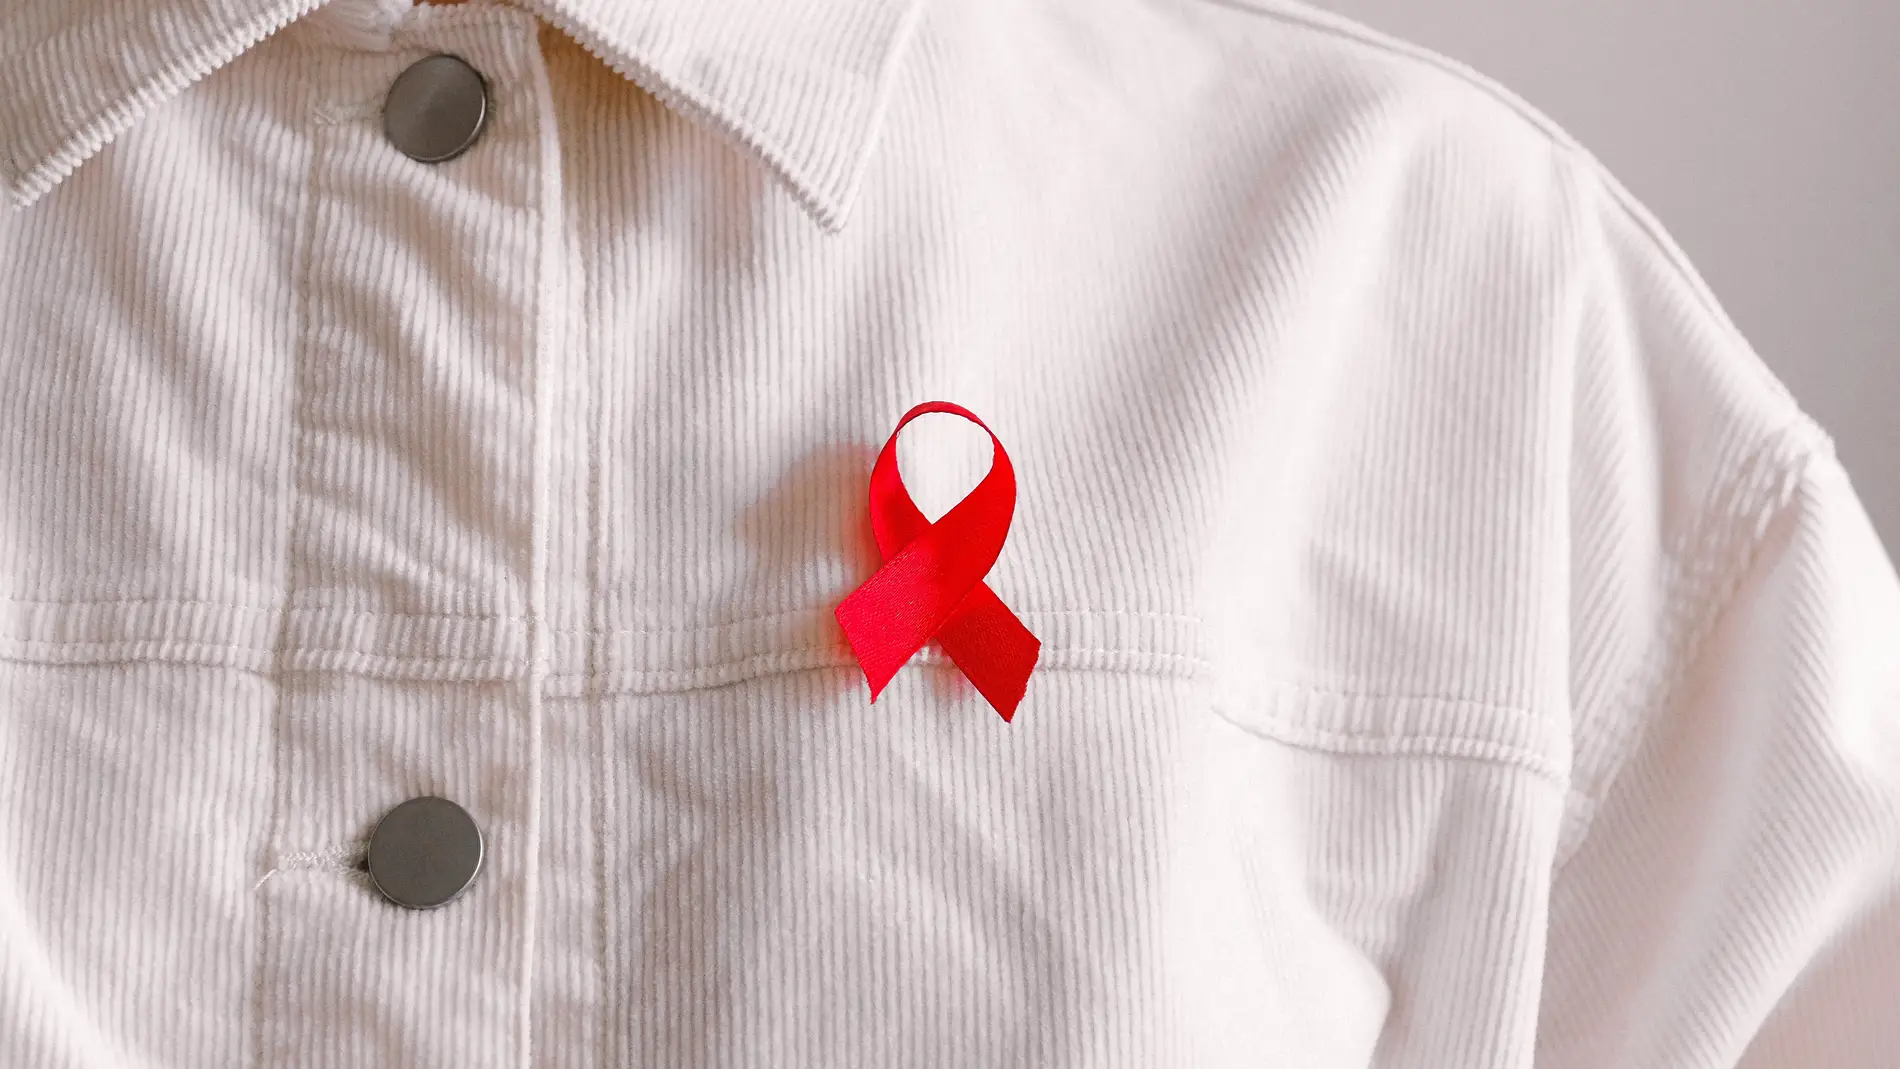 Lazo rojo sida: es su significado y qué simboliza? | Cero Radio